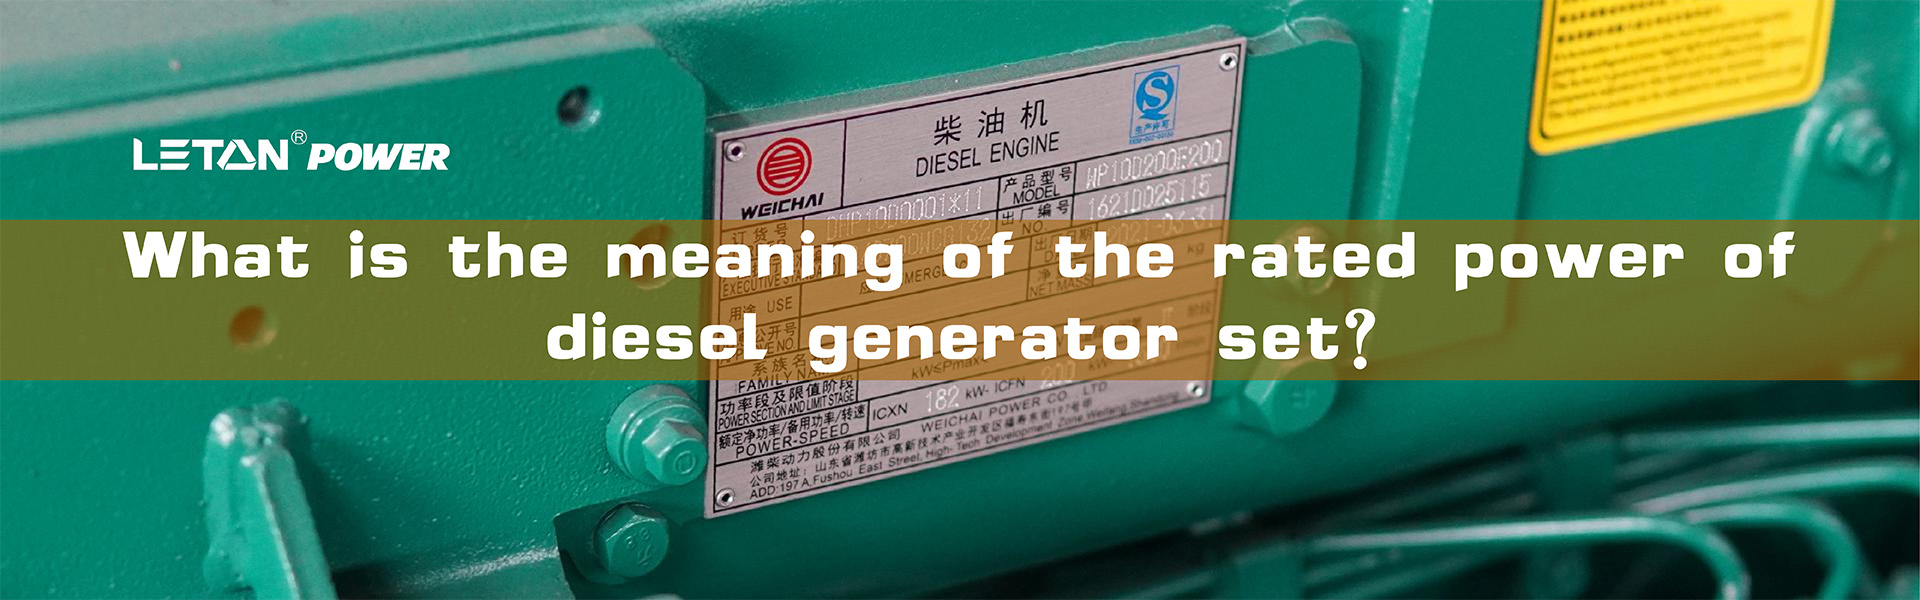 Что означает номинальная мощность дизель-генераторной установки?